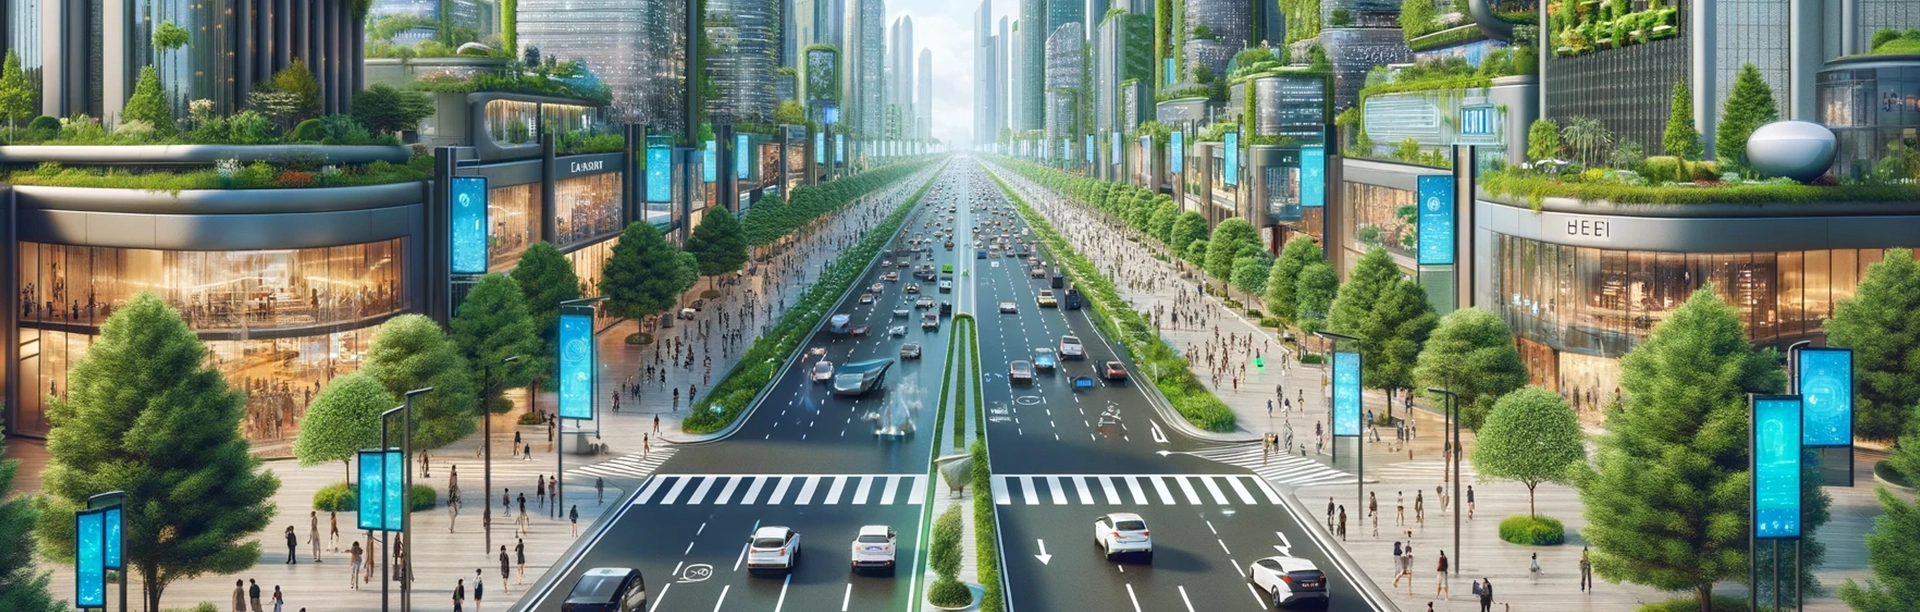 ערים חכמות יותר: תפקידו של מערכות לספירת קהל בתכנון ערים ויתרונותיהן האקולוגיים